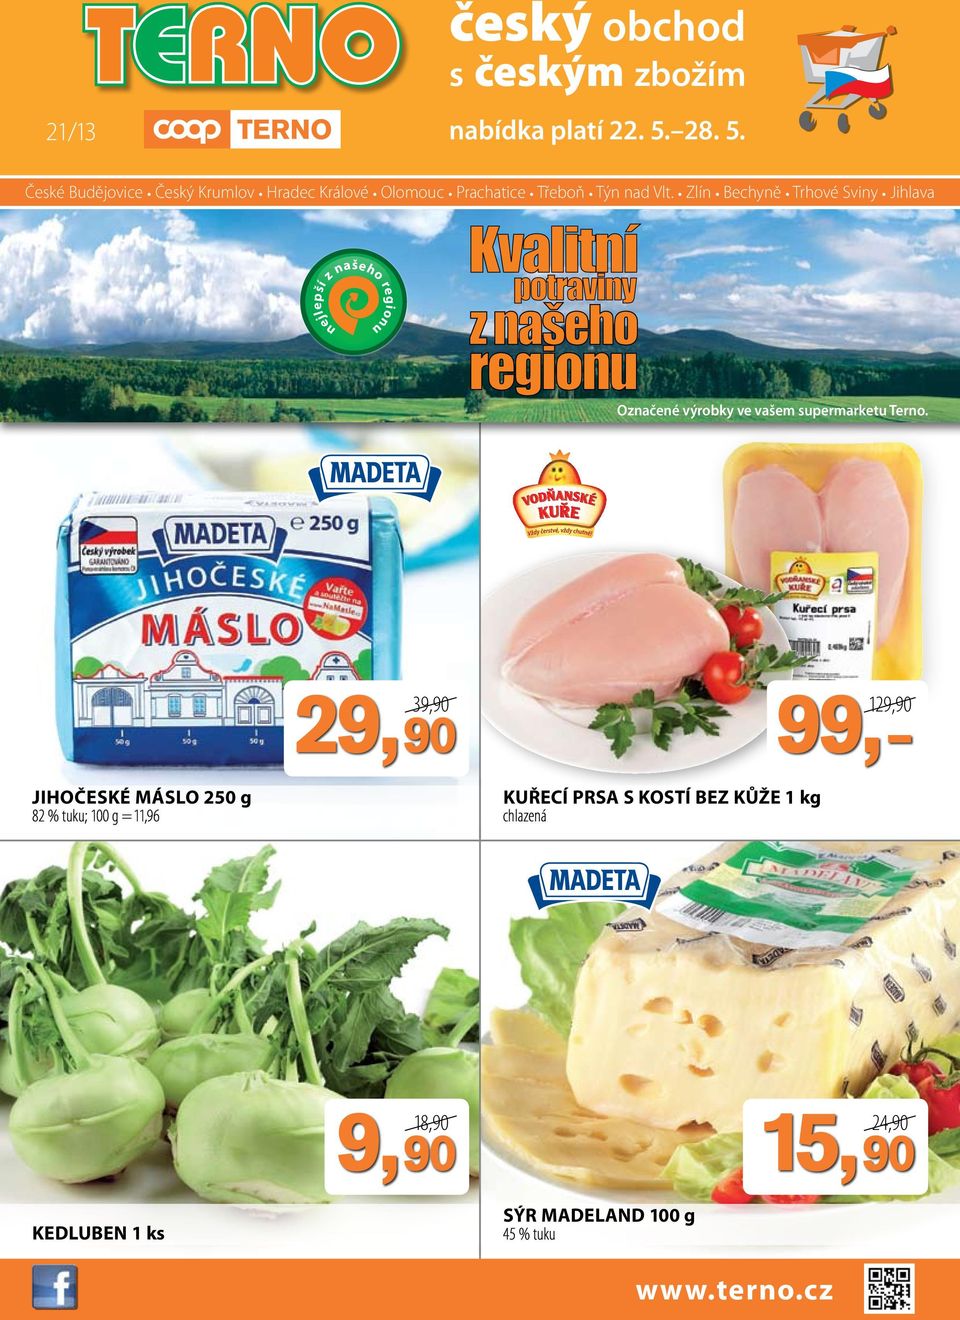 Zlín Bechyně Trhové Sviny Jihlava Označené výrobky ve vašem supermarketu Terno.